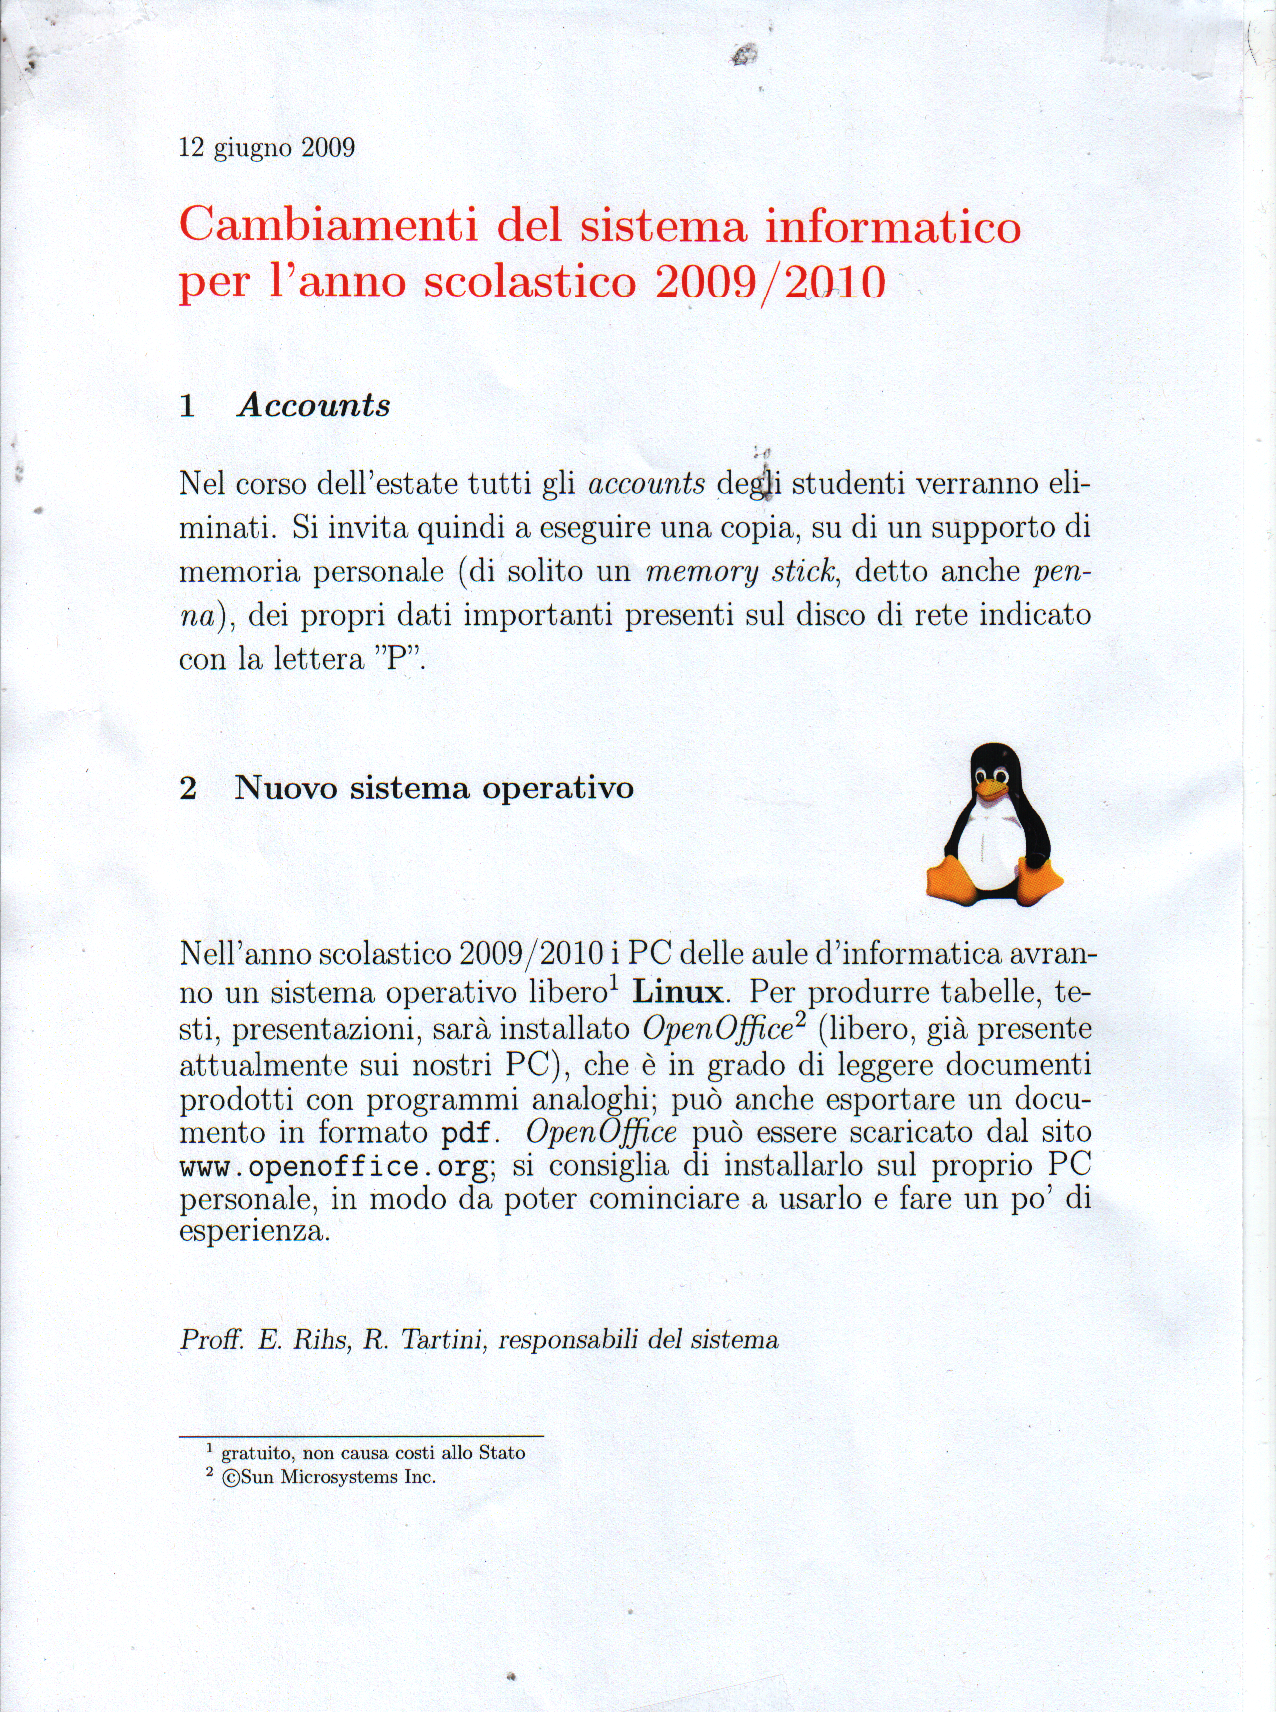 Foglio apparso a fine anno scolastico 08/09 che annuncia il passaggio a Linux come OS per il l'anno prossimo.